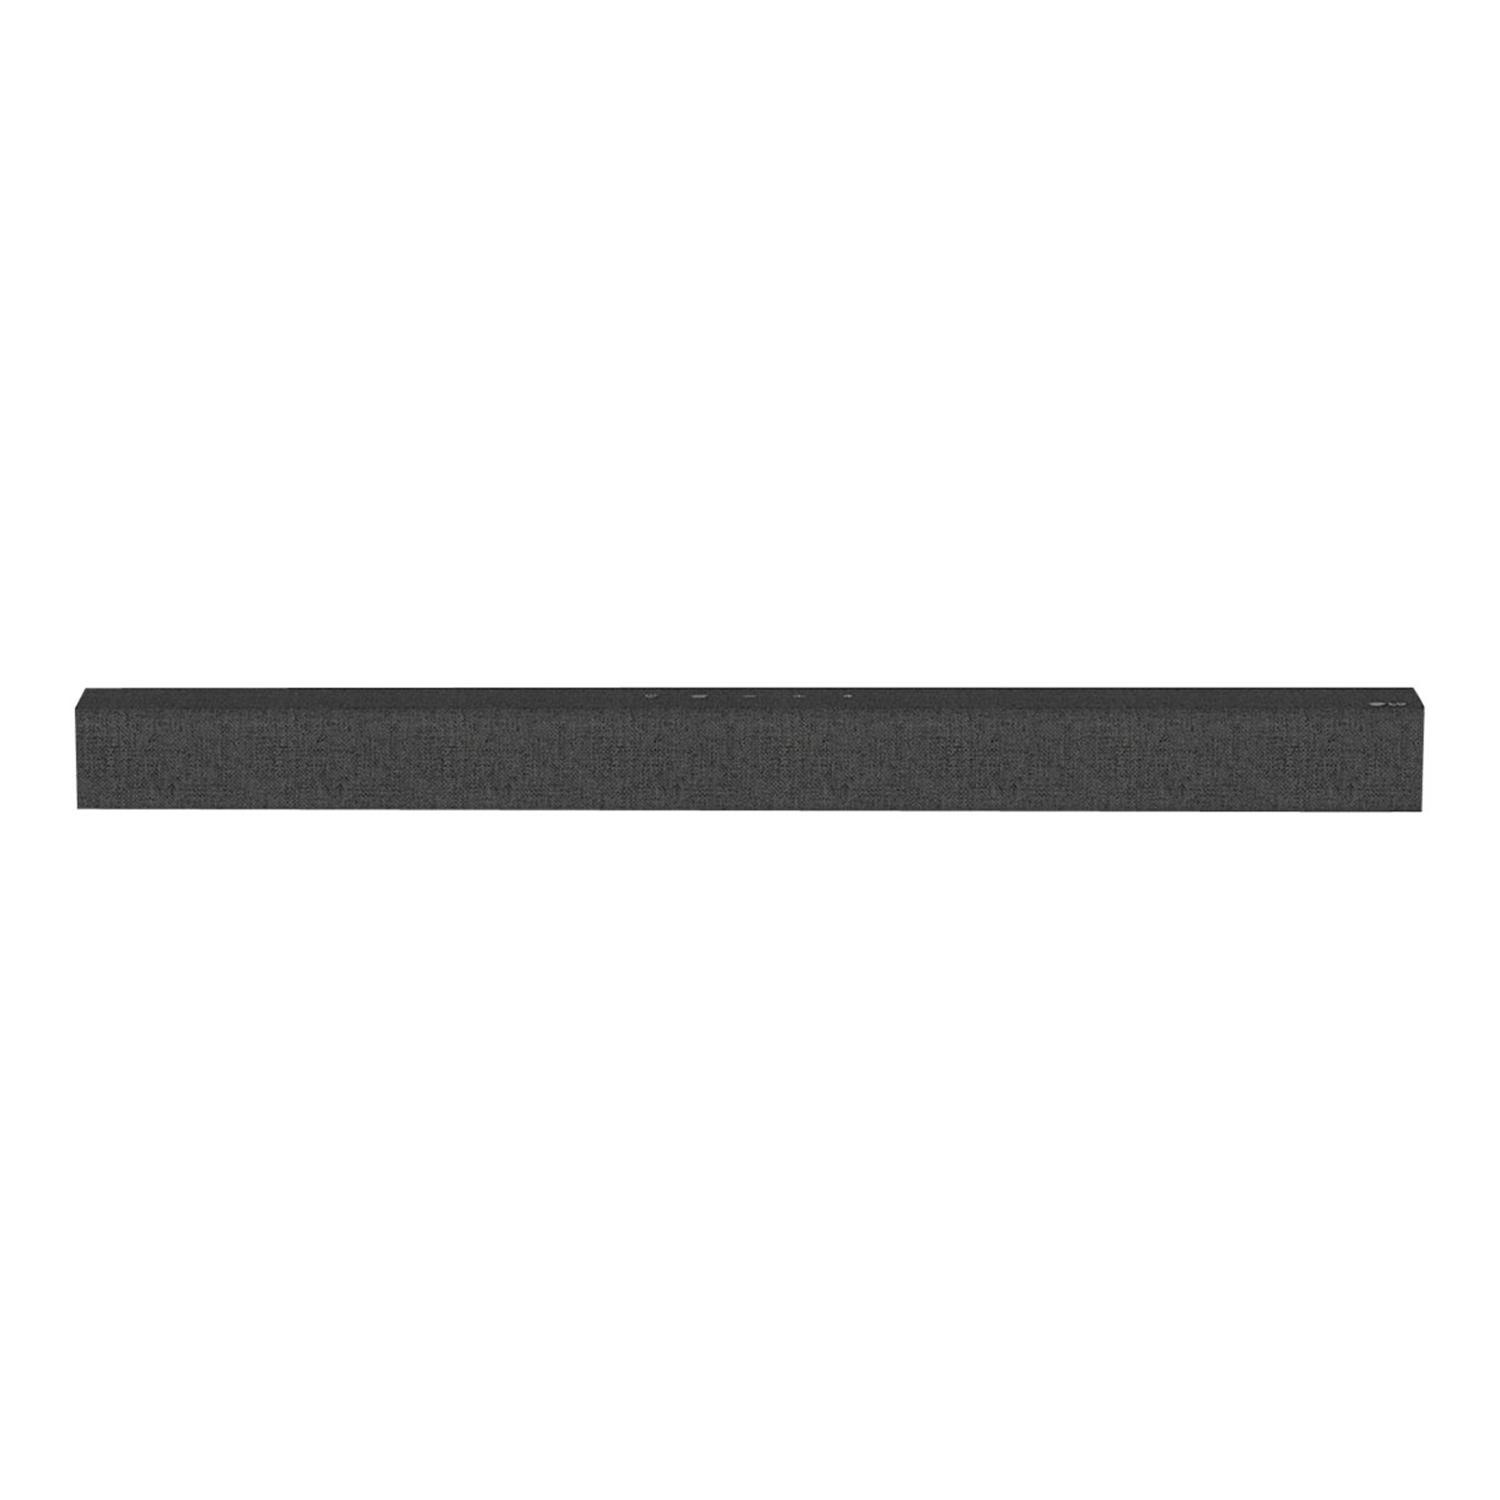 LG SP2-CGBRLLK Soundbar All in One 2.1 Ch 100W Dark Grey | Appliances ...